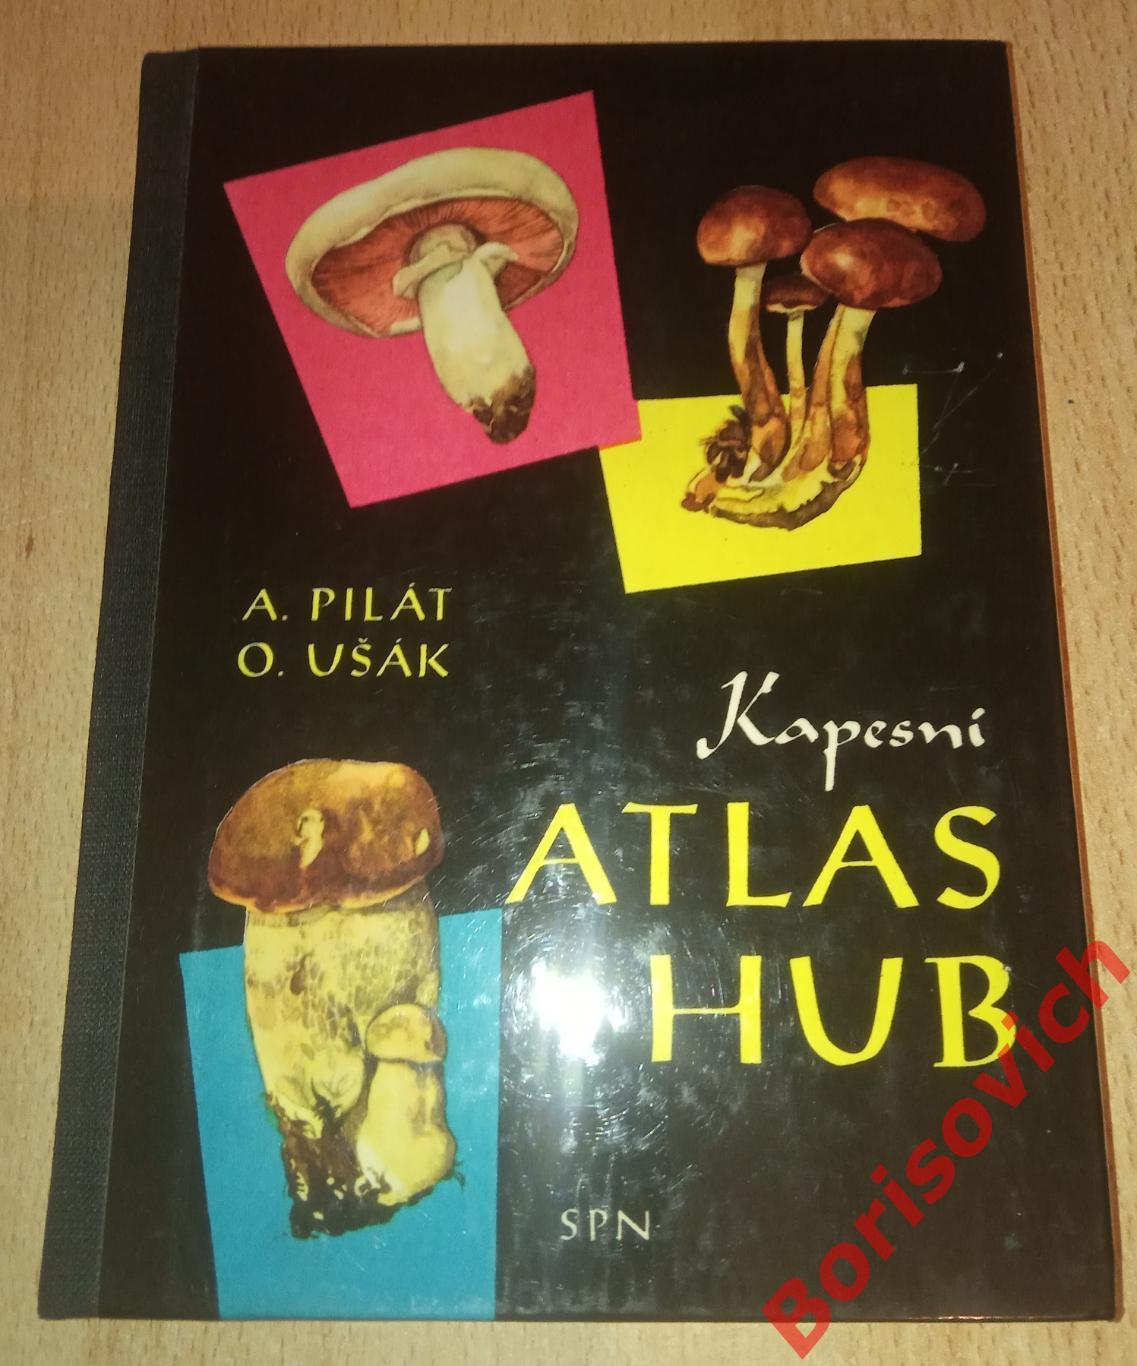 Kapesni atlas hub Определитель грибов на словацком языке Прага 1968 г 192 стр